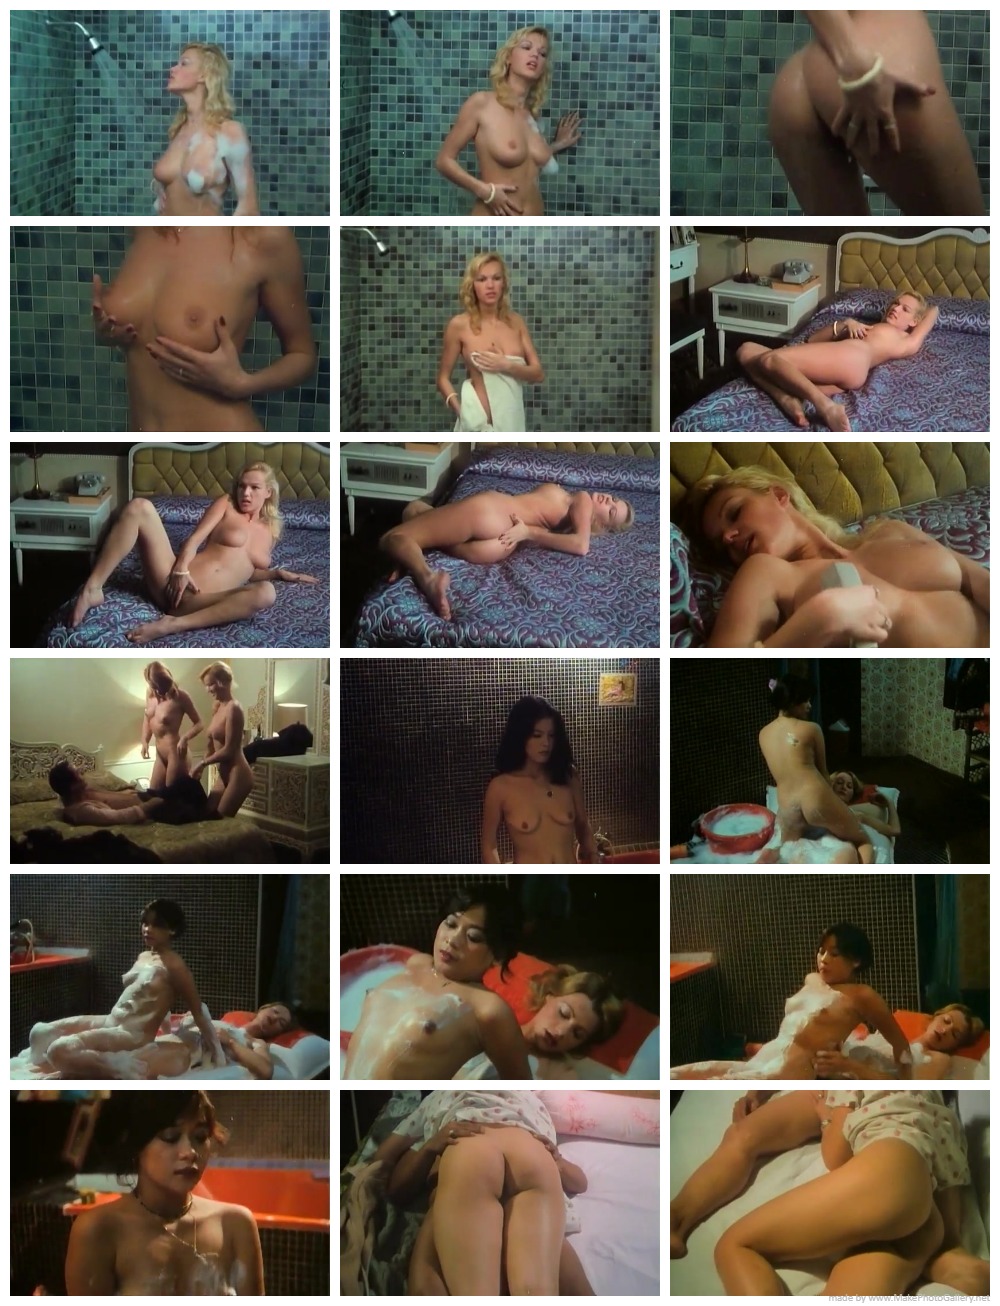 Le journal érotique dune Thailandaise (1980) EroGarga Watch Free Vintage Porn Movies, Retro Sex Videos, Mobile Porn image